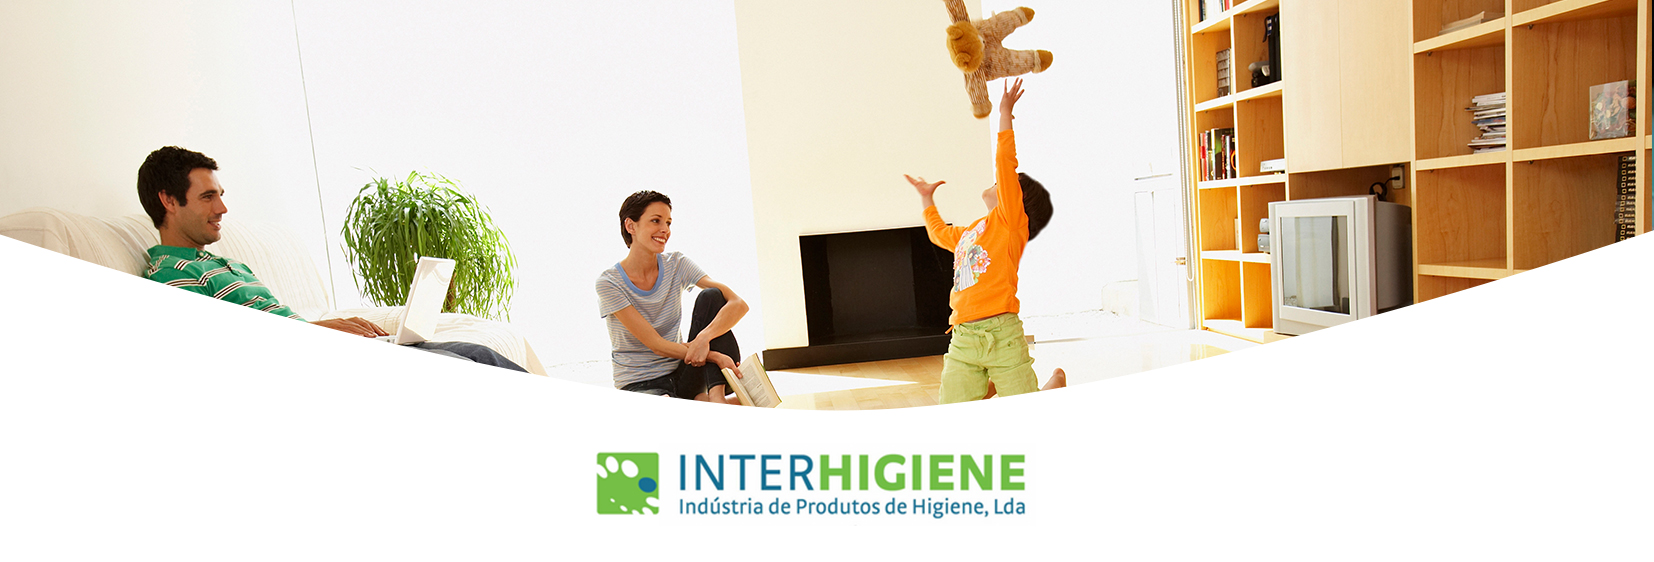 Interhigiene - banner